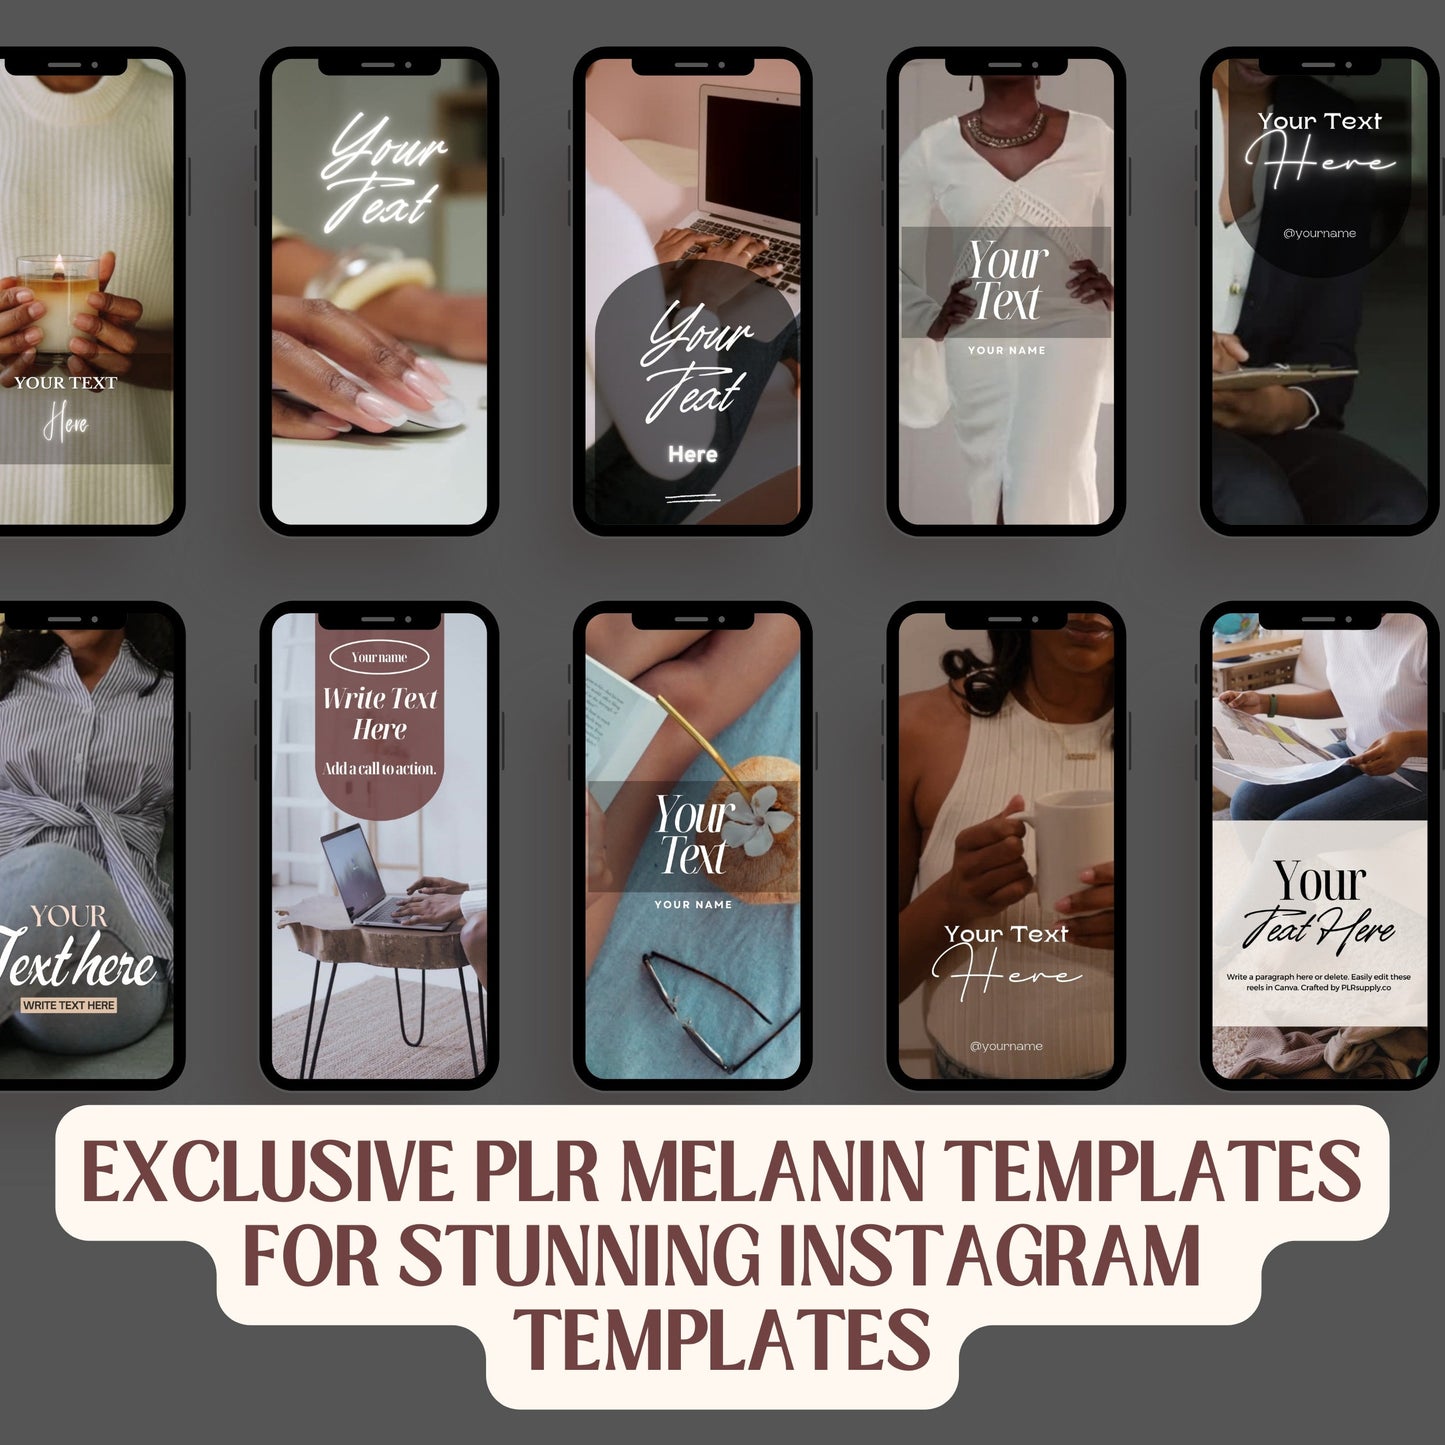 Faceless Melanin Instagram Reels Videos Resell Rights vol 2- DFY Digital Product